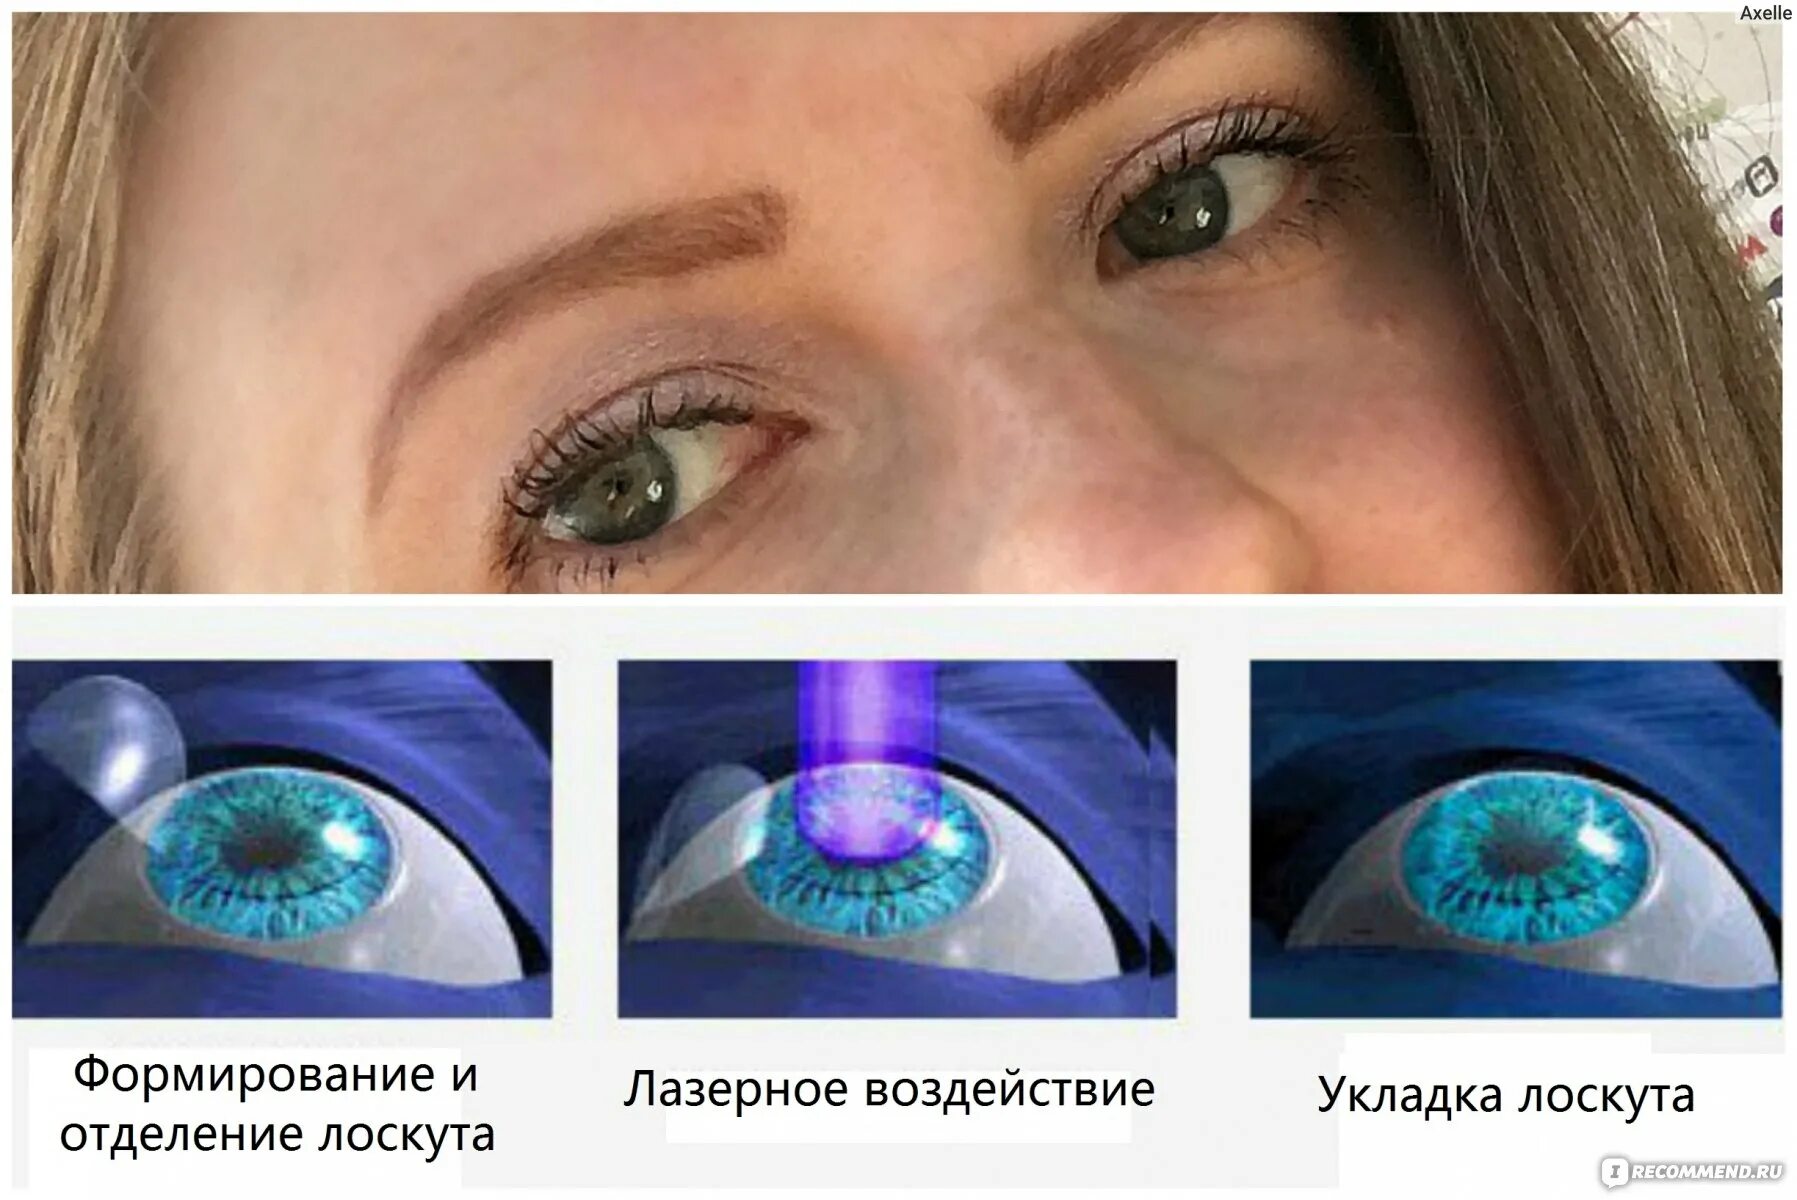 Ласик (LASIK)/Фемто ласик (Femto LASIK). Лазерная коррекция зрения Femto LASIK. Глаза после лазерной коррекции. Коррекция зрения сравнение